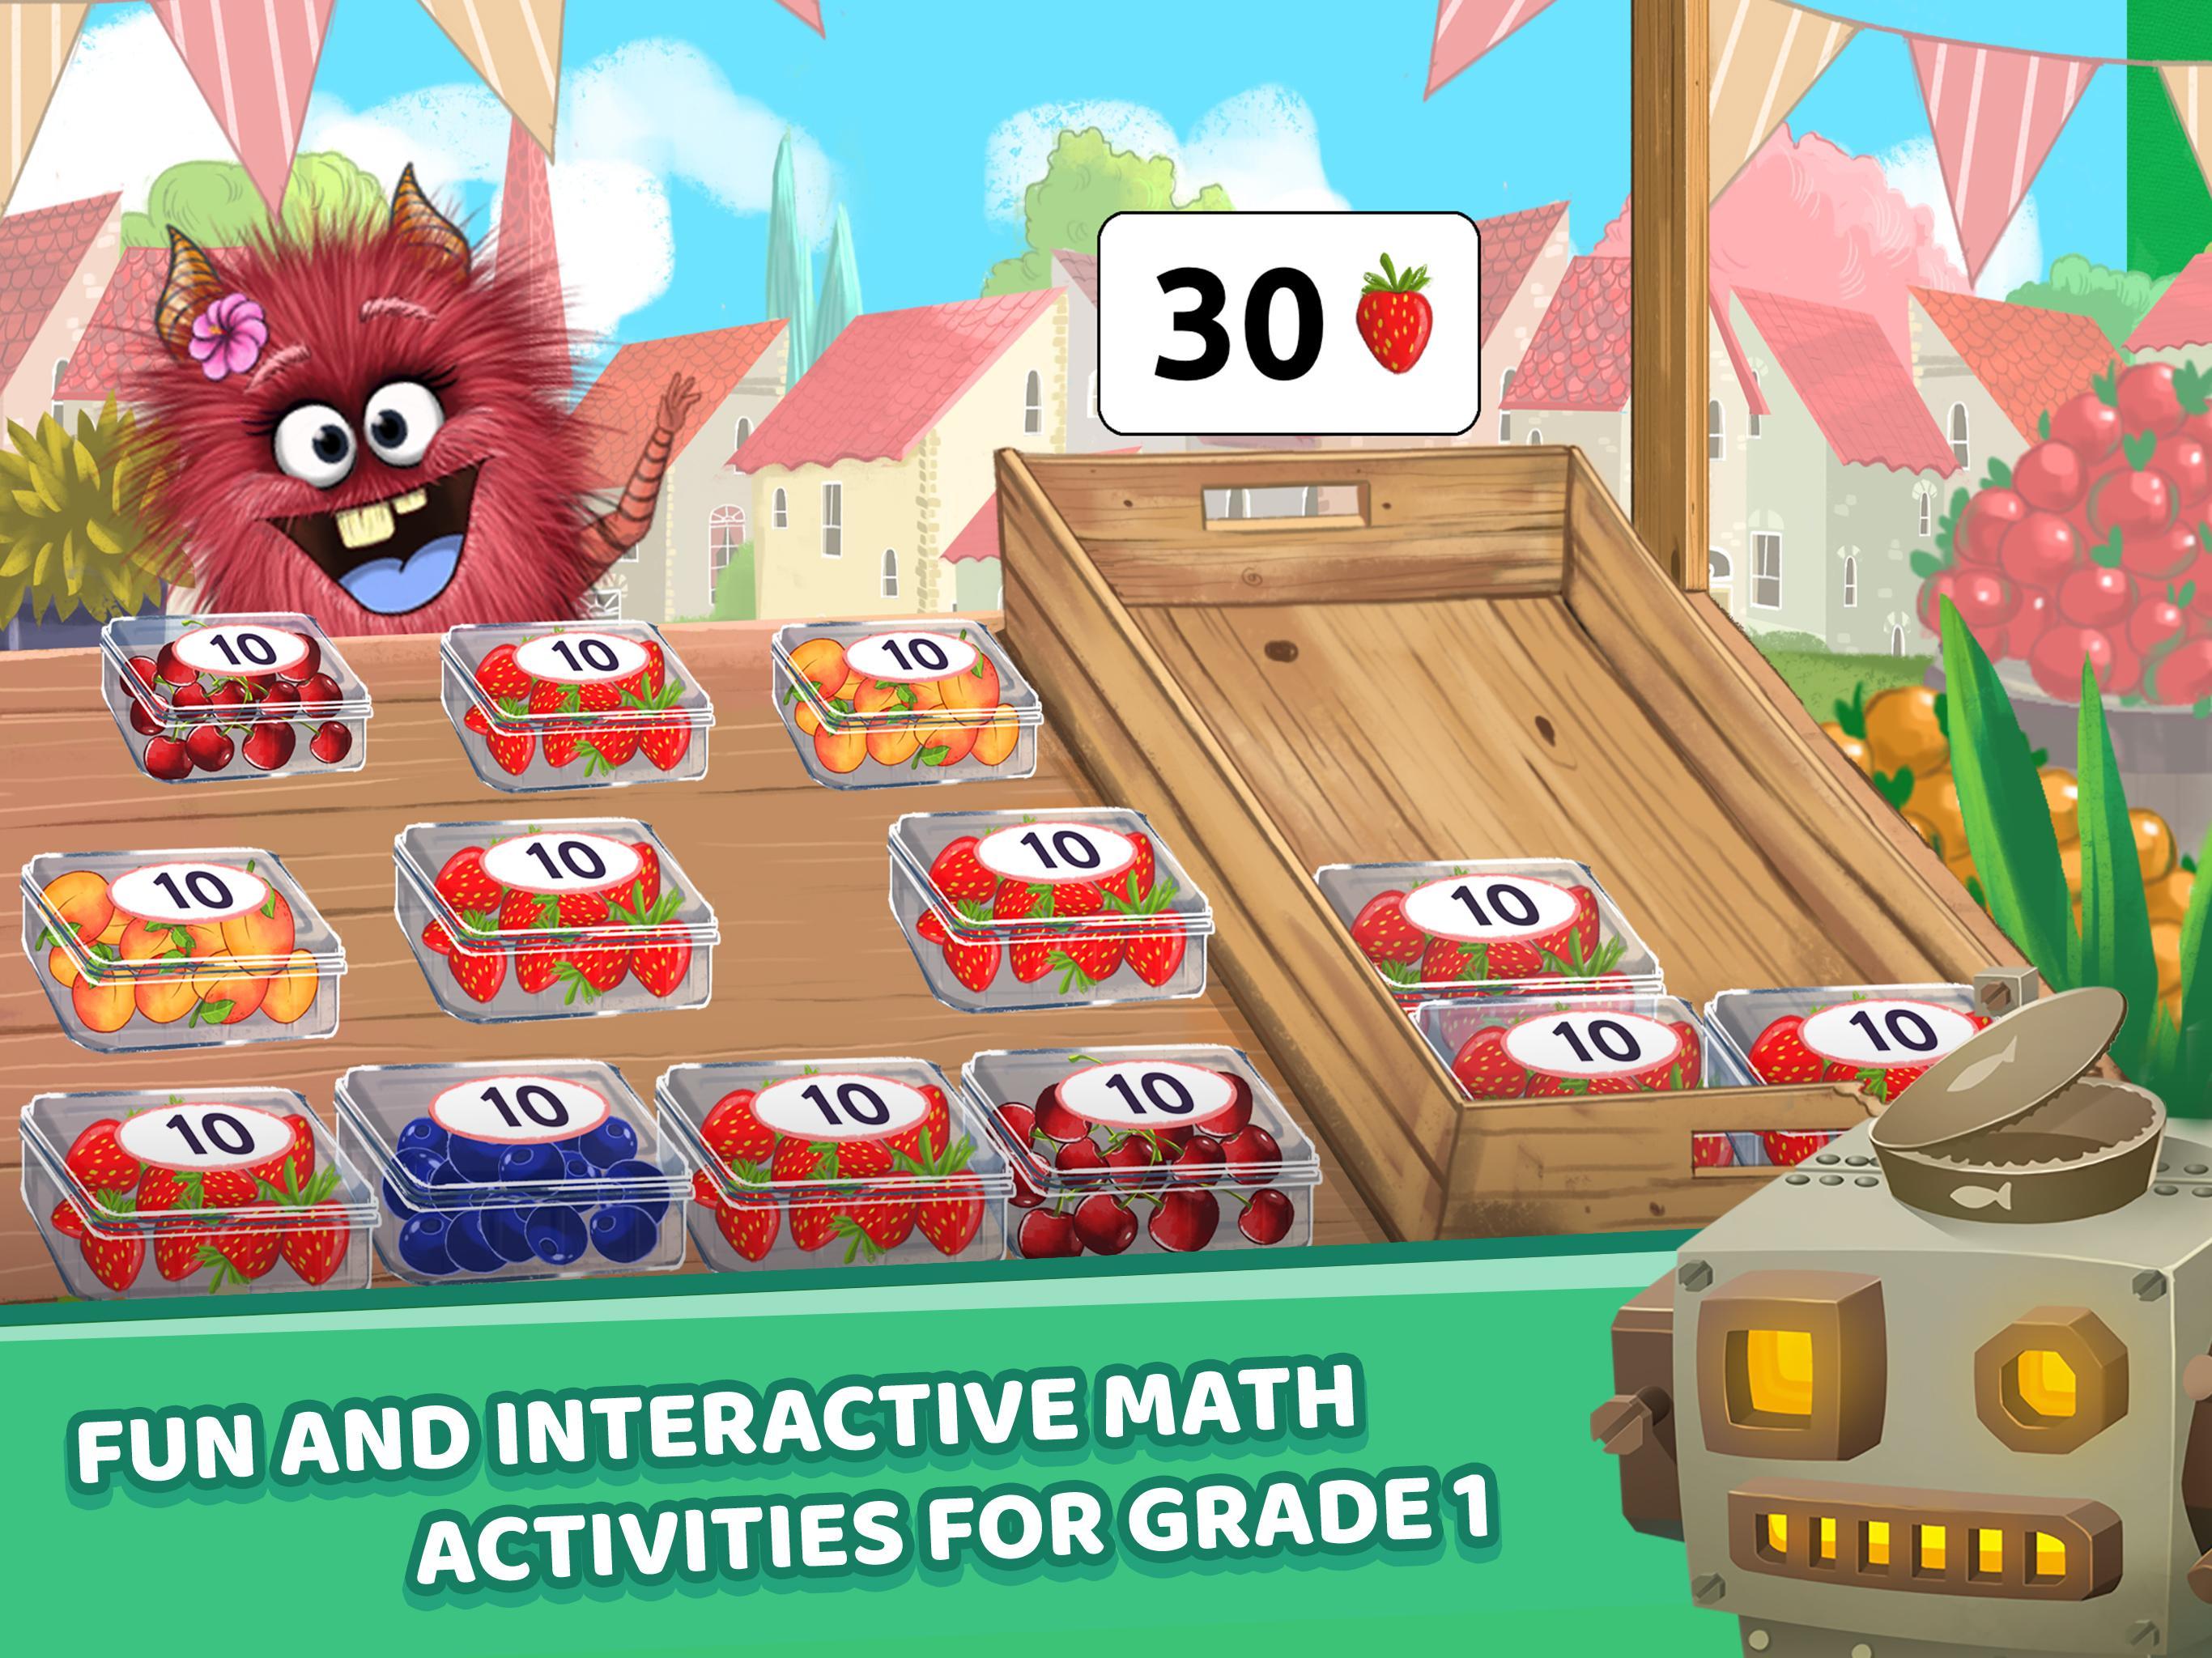 Matific Galaxy - Maths Games for 1st Graders 2.2.2 Screenshot 9